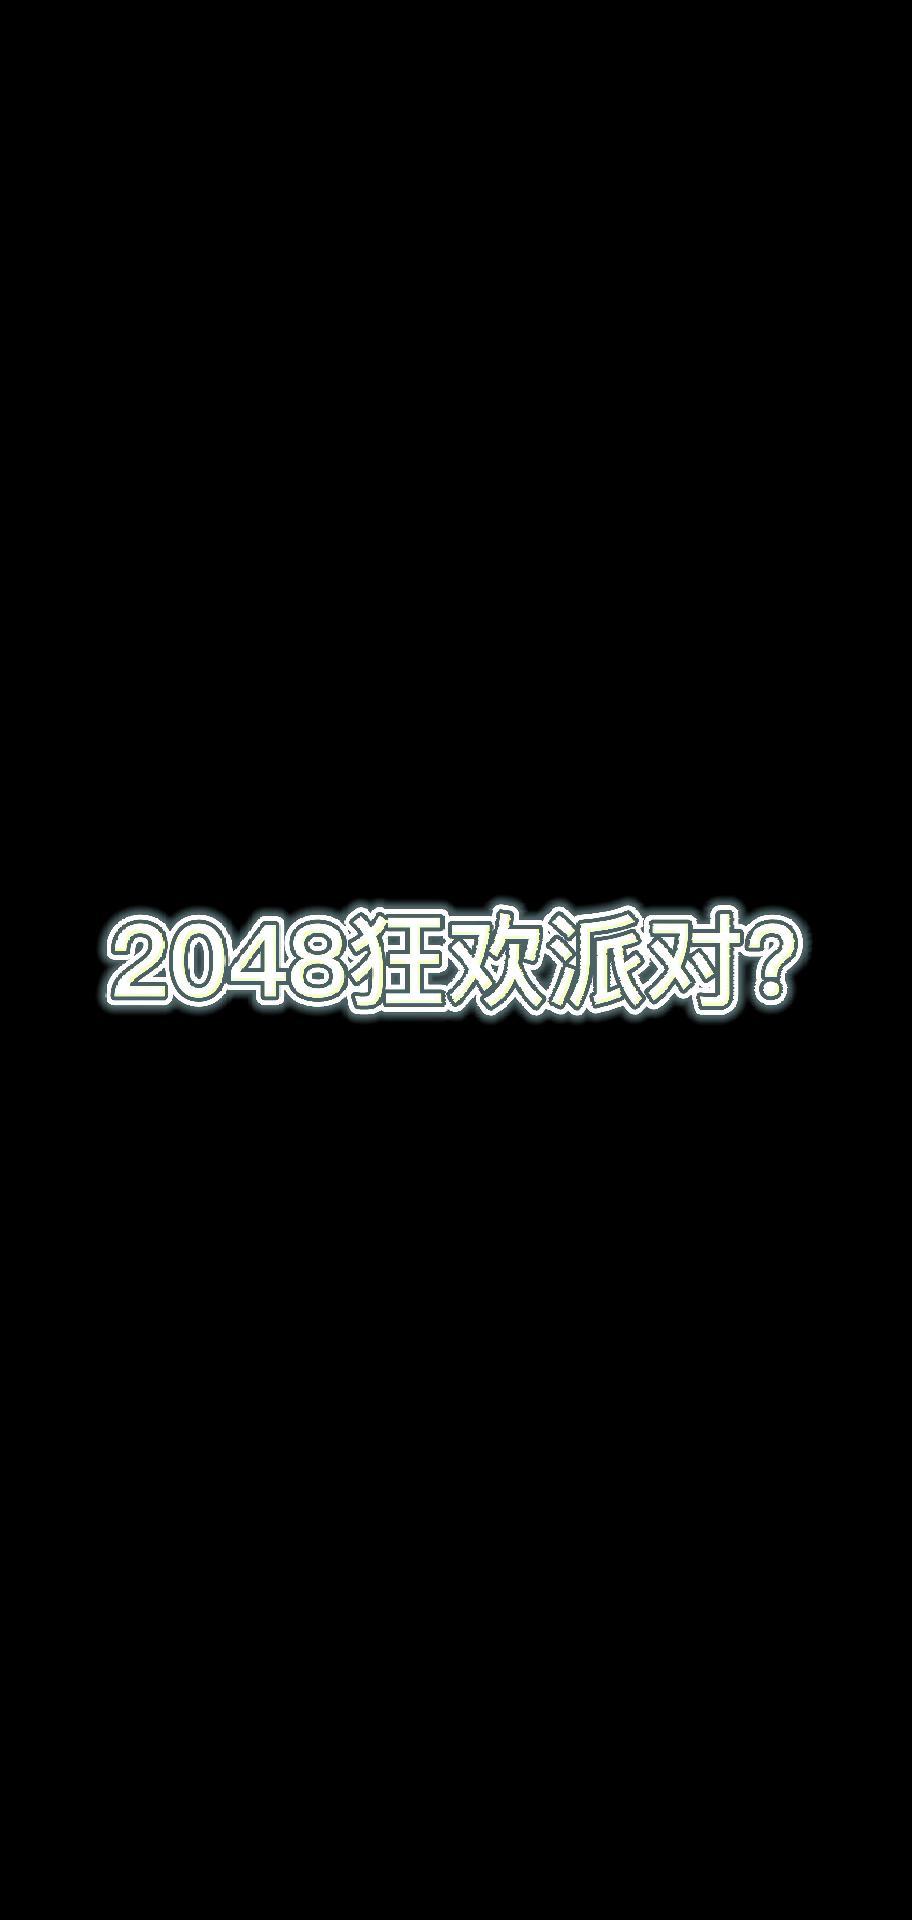 2048狂欢派对V1.4官方PV宣传片